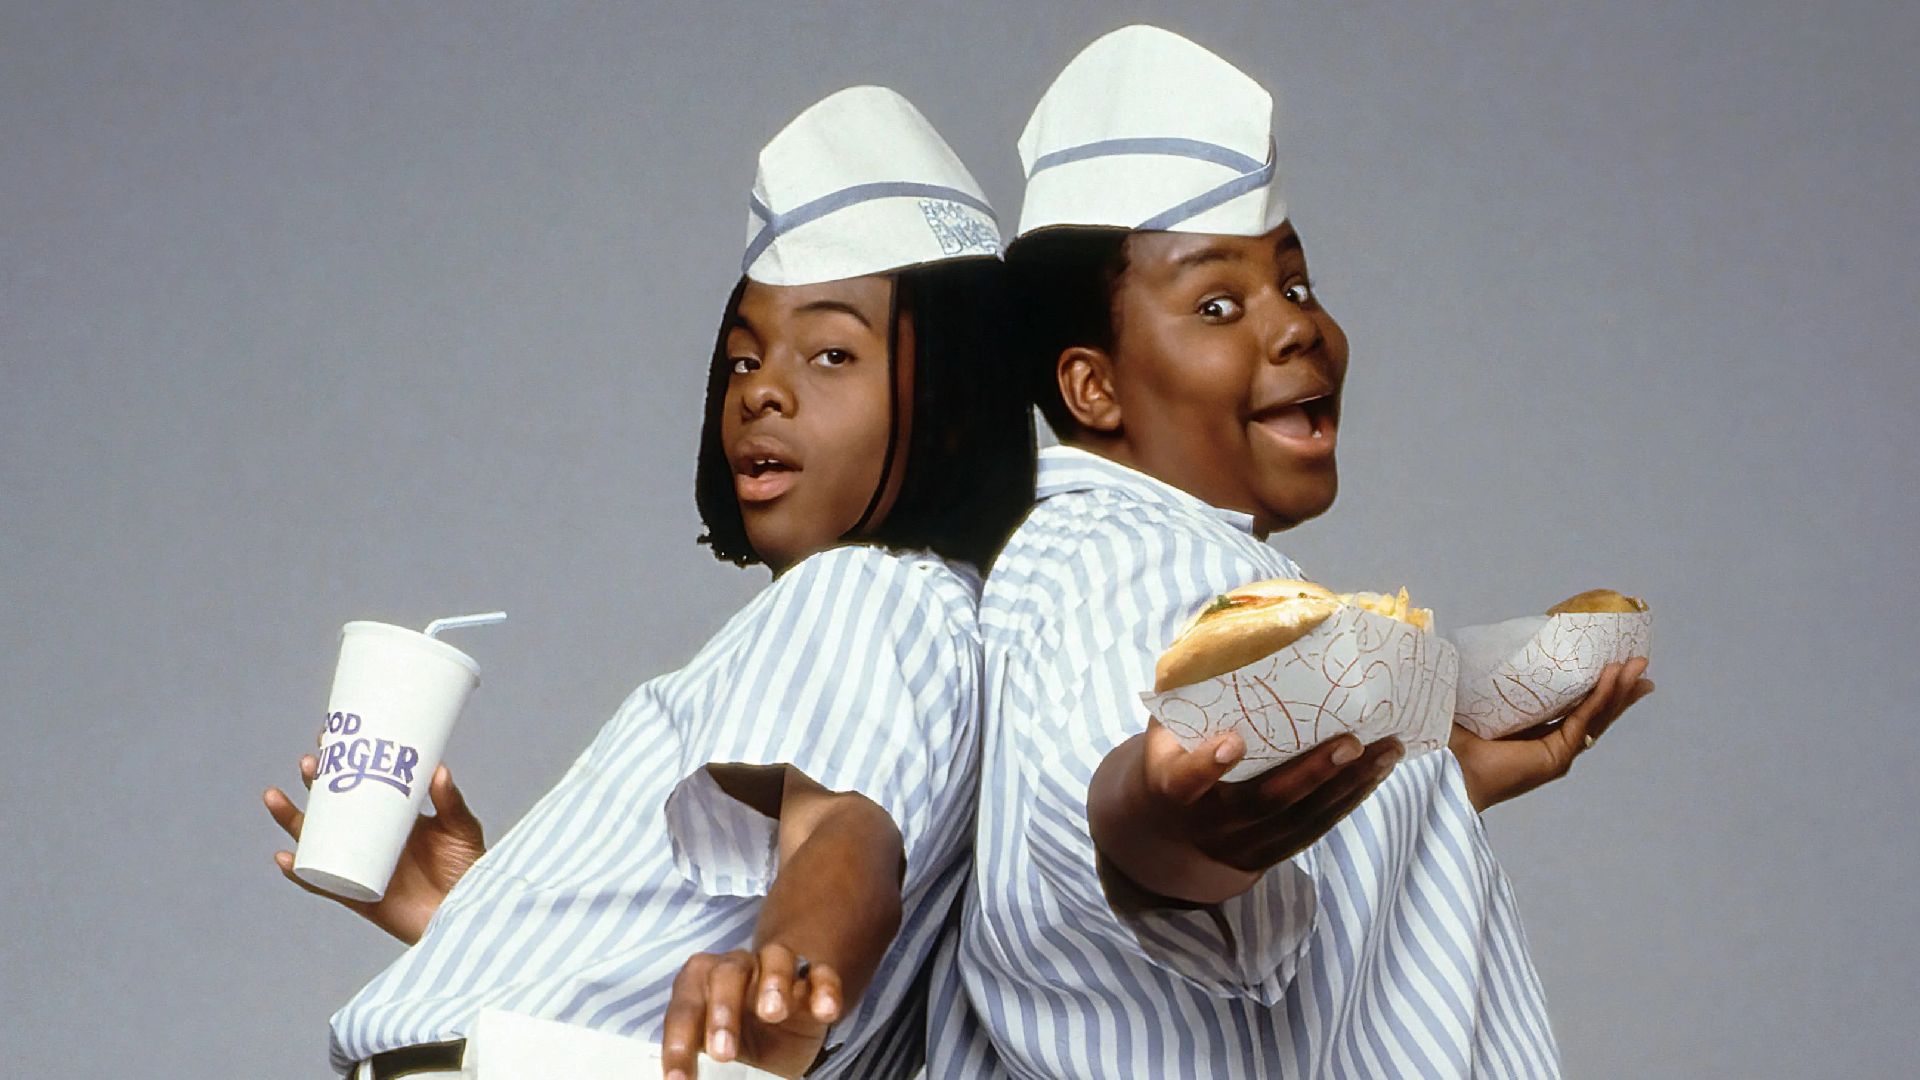 Los comediantes, también conocidos por "All That" y "Kenan y Kel", volverán en la secuela de "Buena hamburguesa". (Nickelodeon)